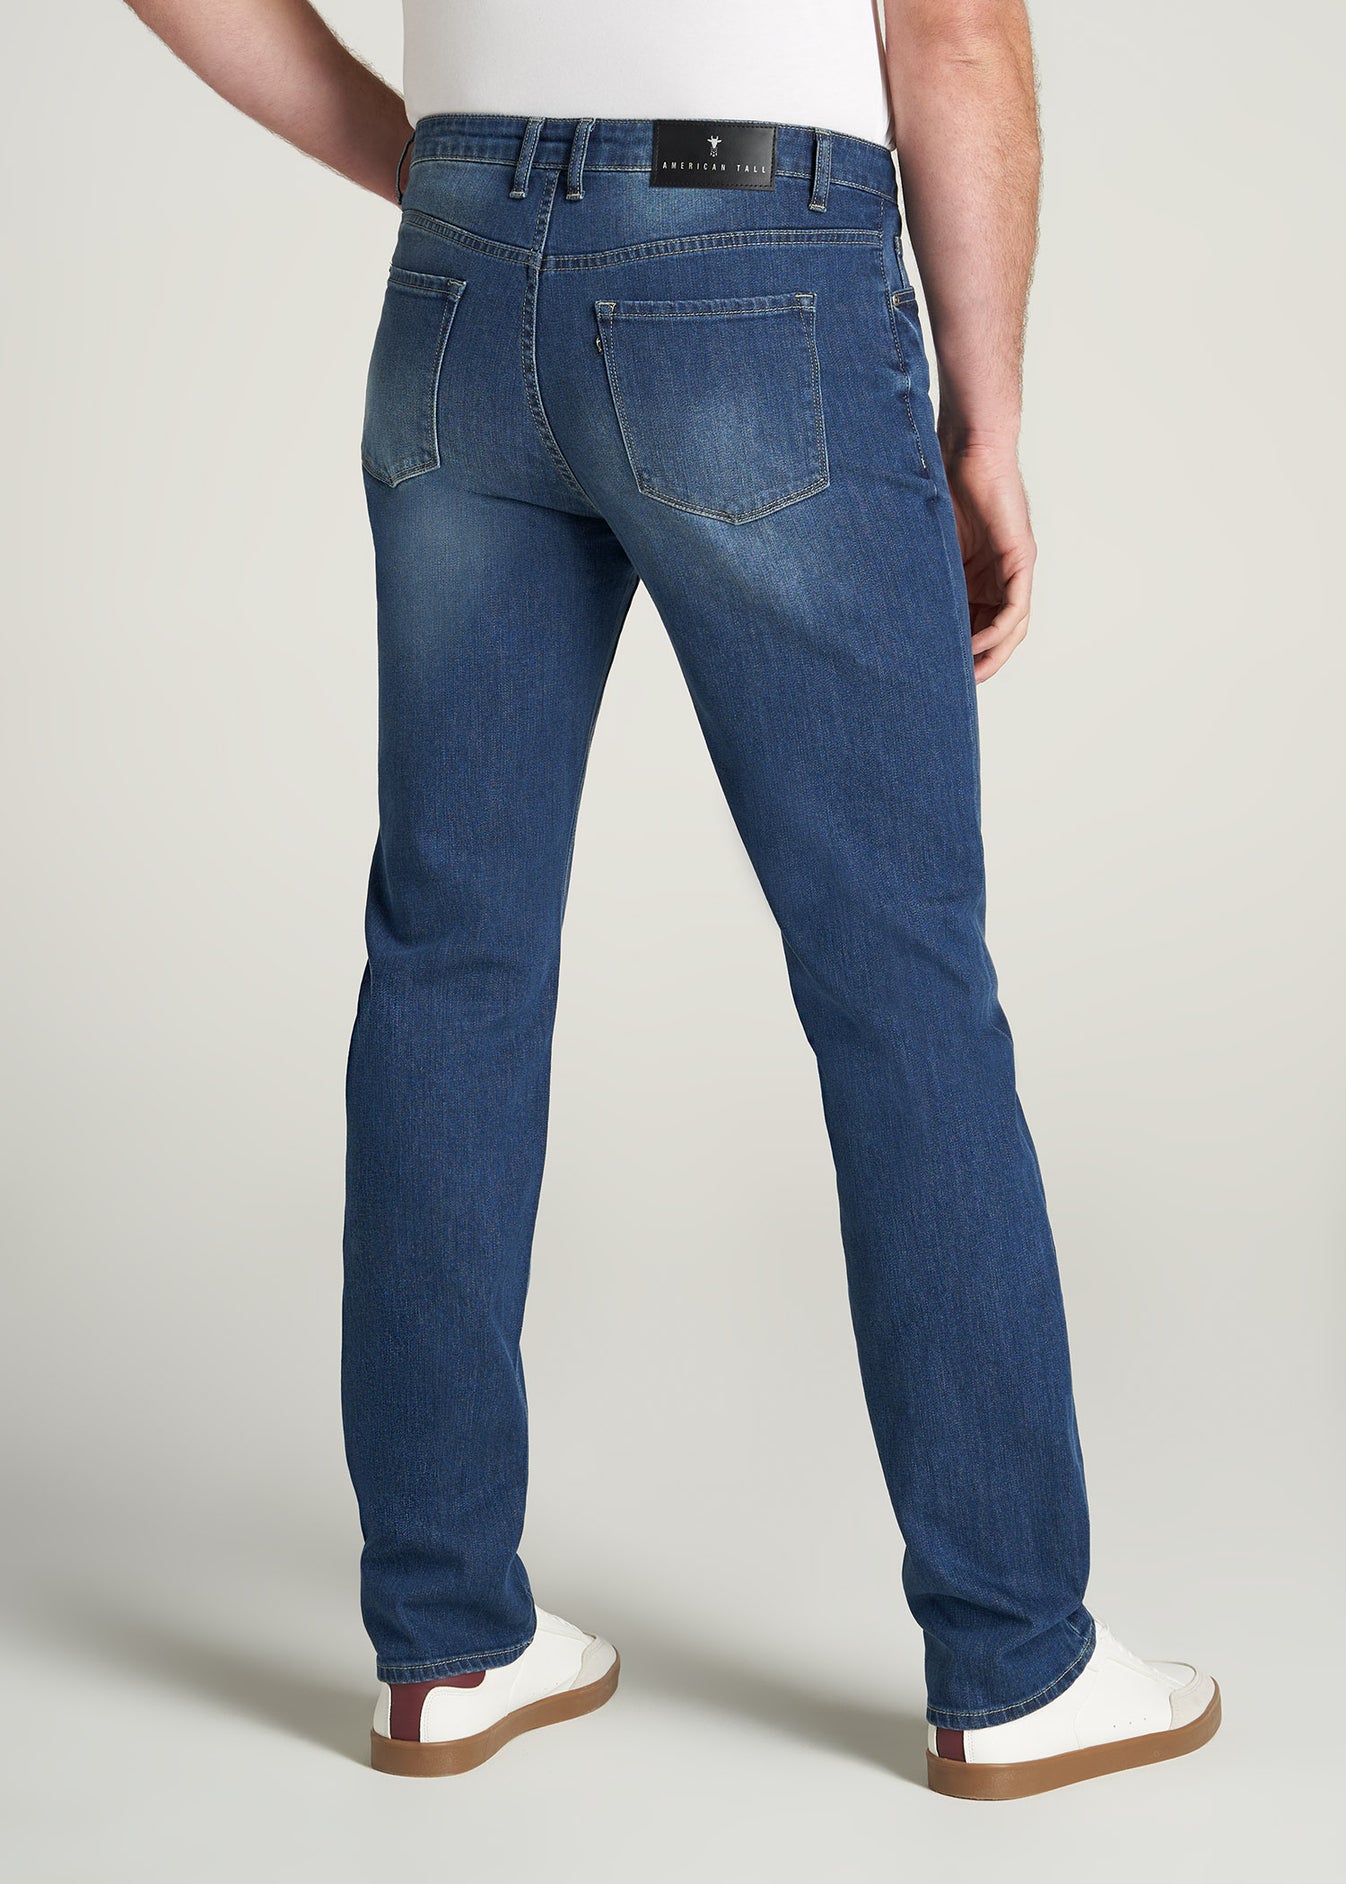 Classic Blue J1 Tall Men's Jeans | American Tall